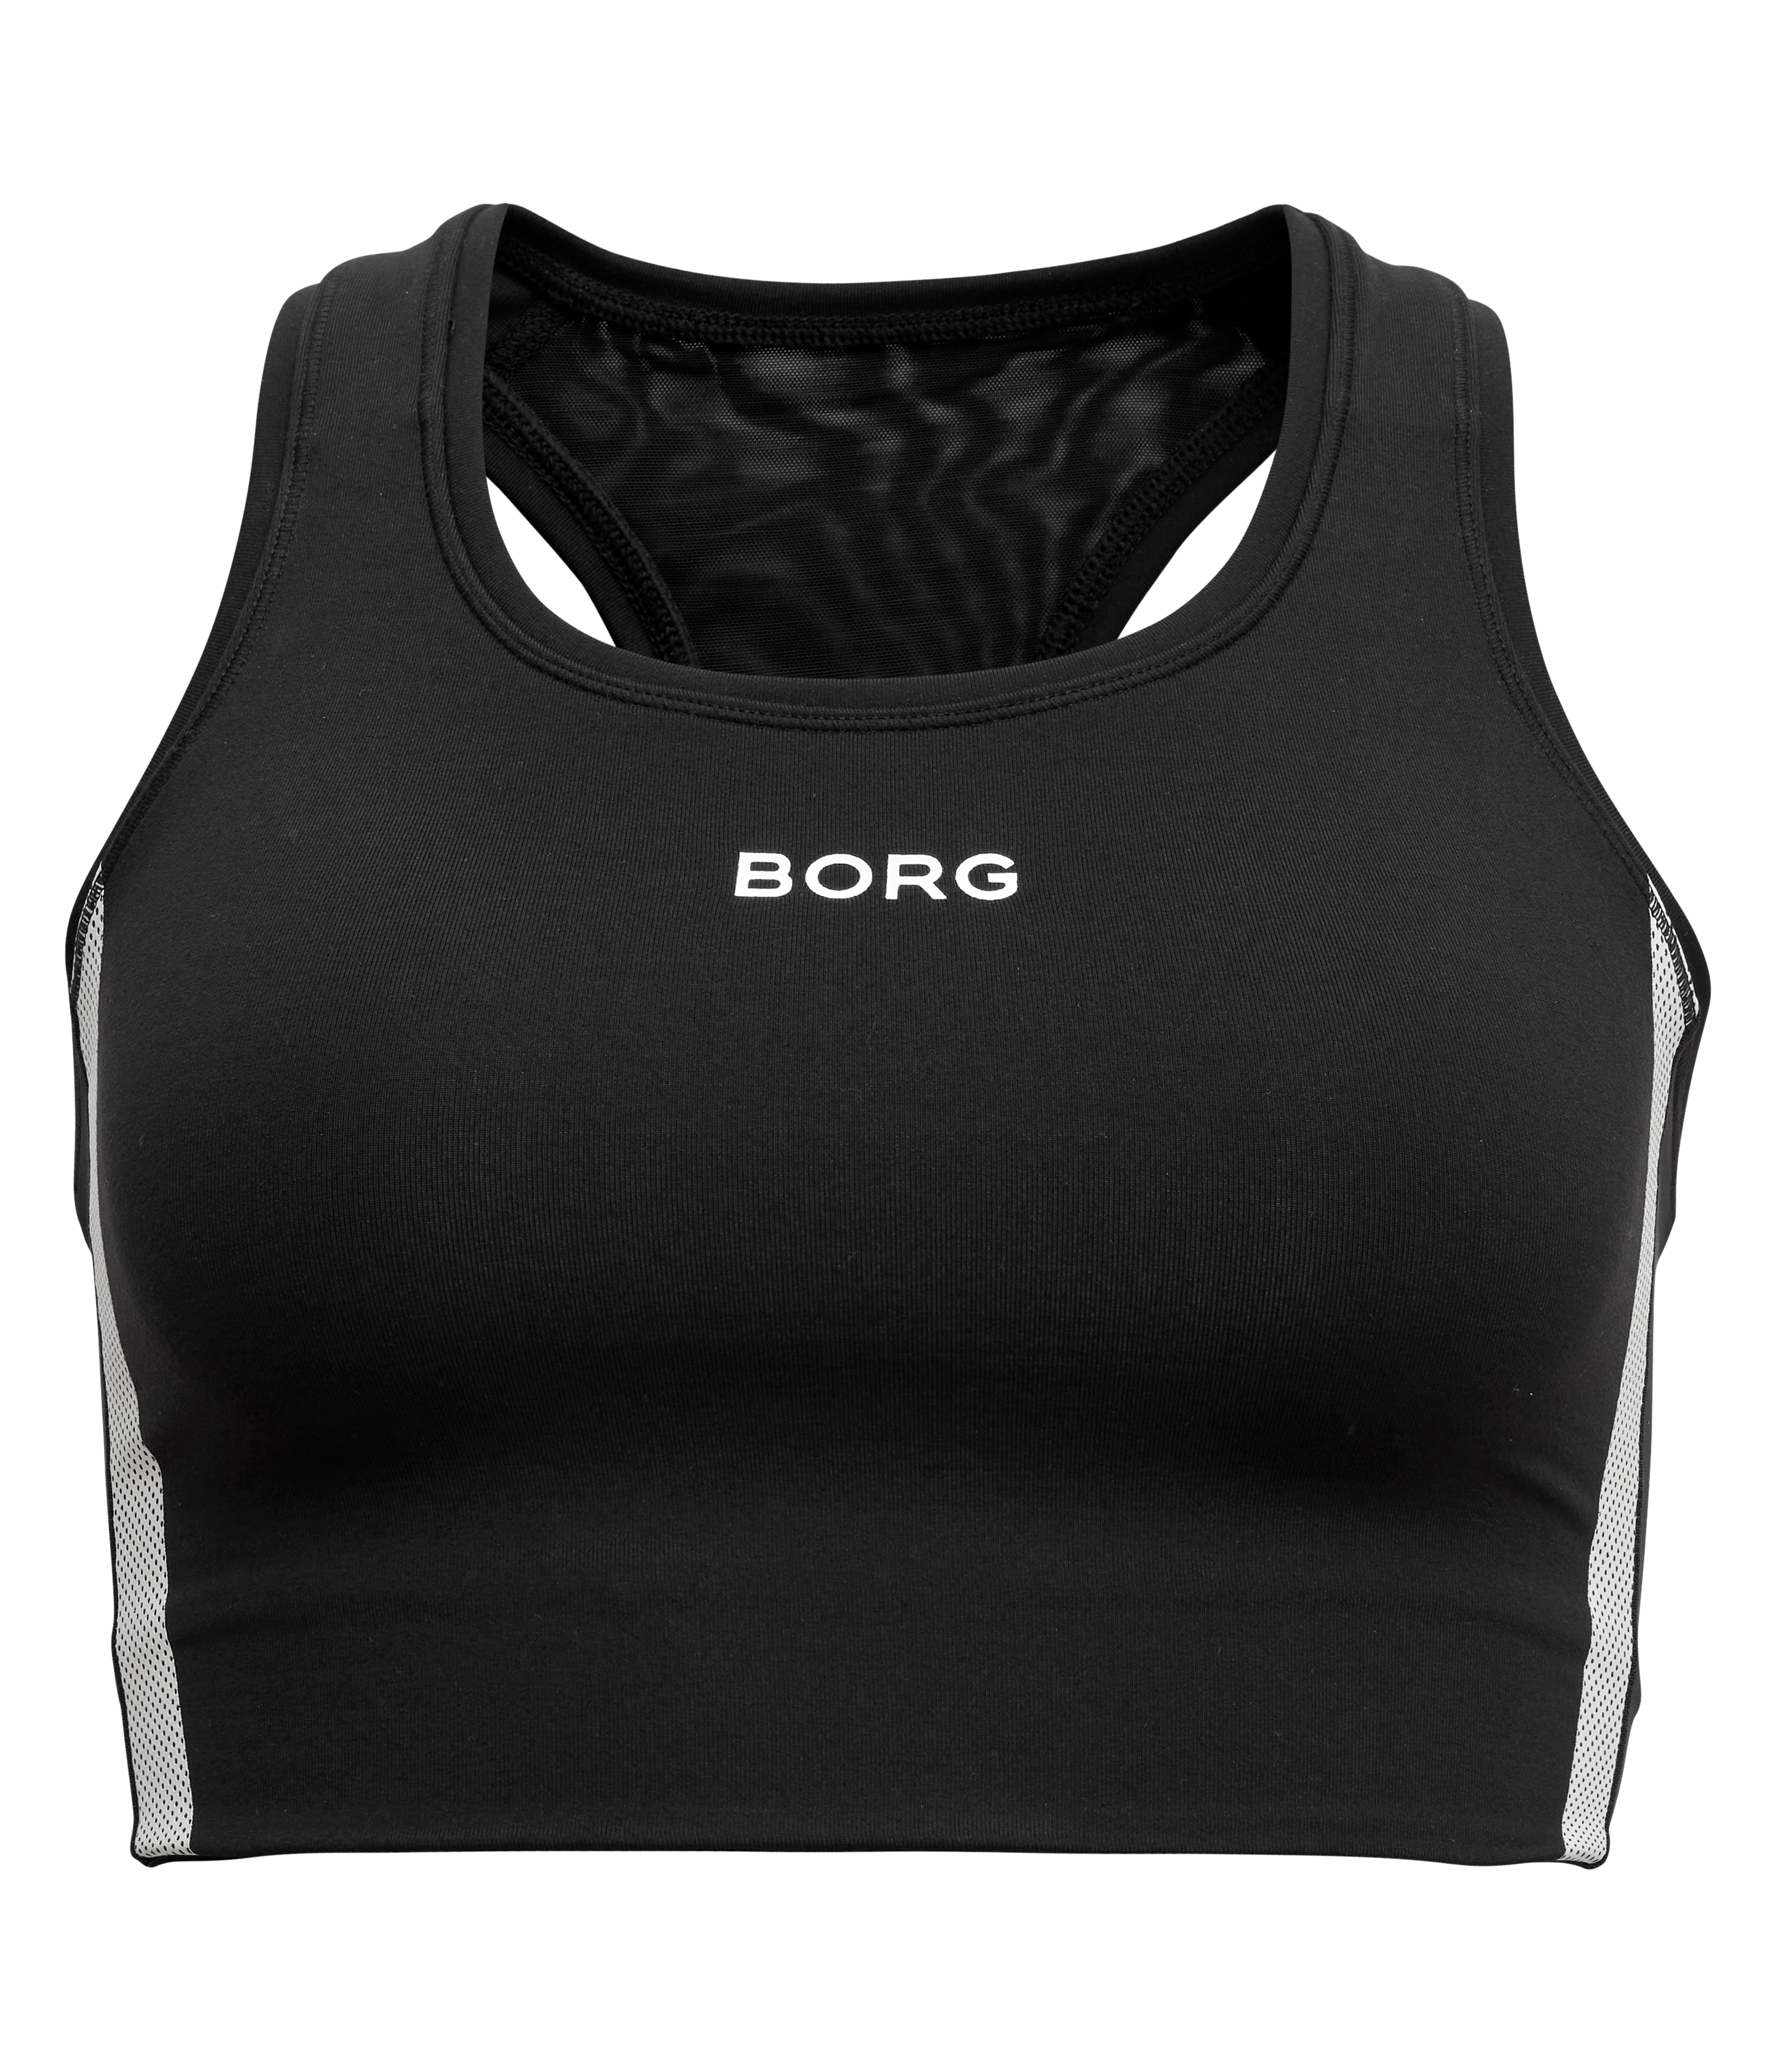 Björn Borg, šport. podprsenka, čierna, 39,95€, www.upbrands.sk